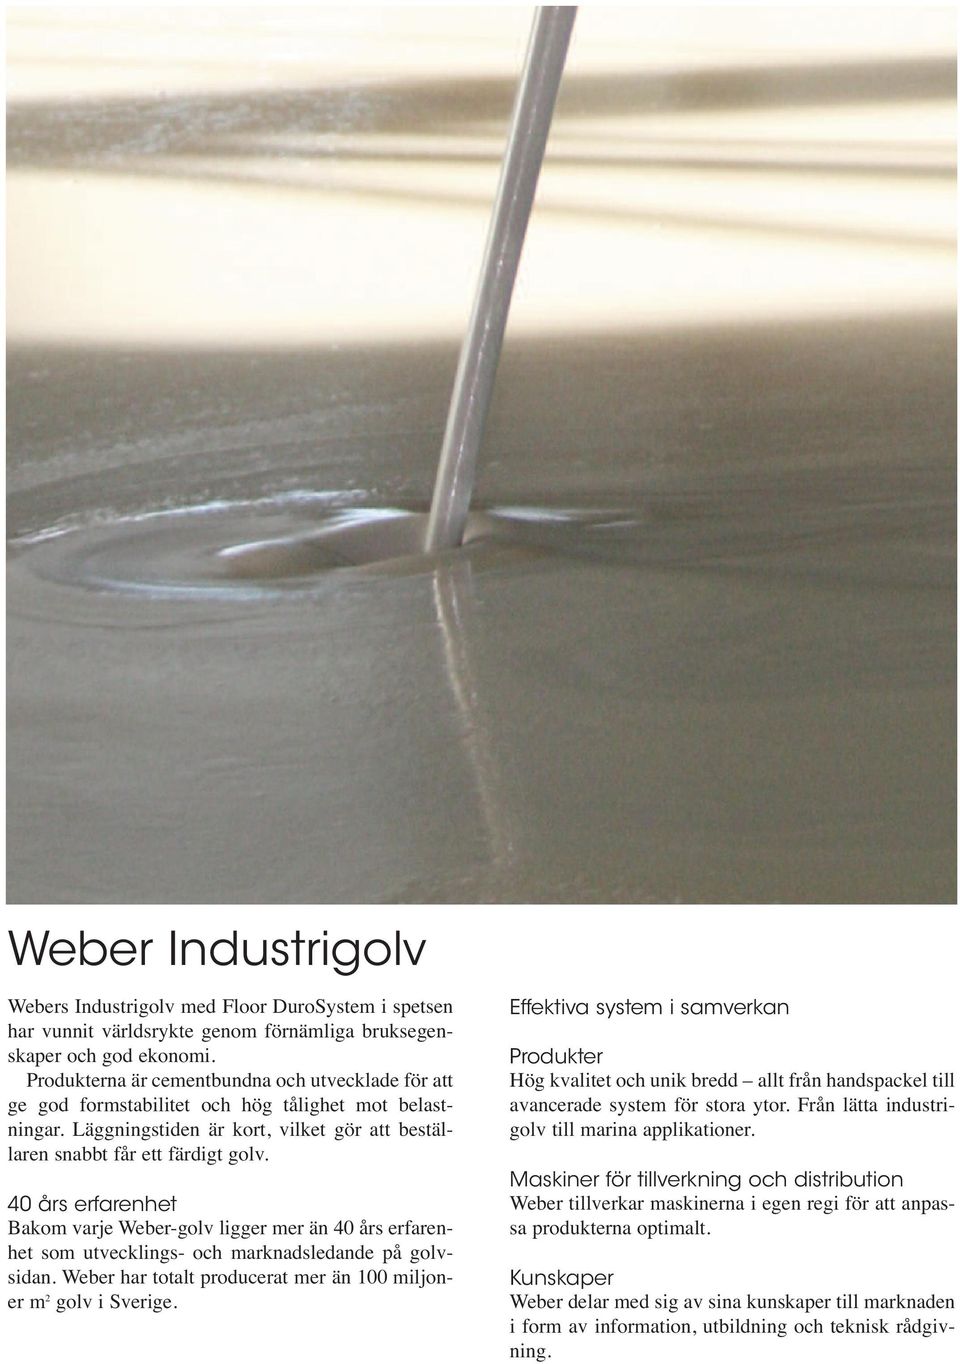 40 års erfarenhet Bakom varje Weber-golv ligger mer än 40 års erfarenhet som utvecklings- och marknadsledande på golvsidan. Weber har totalt producerat mer än 100 miljoner m 2 golv i Sverige.